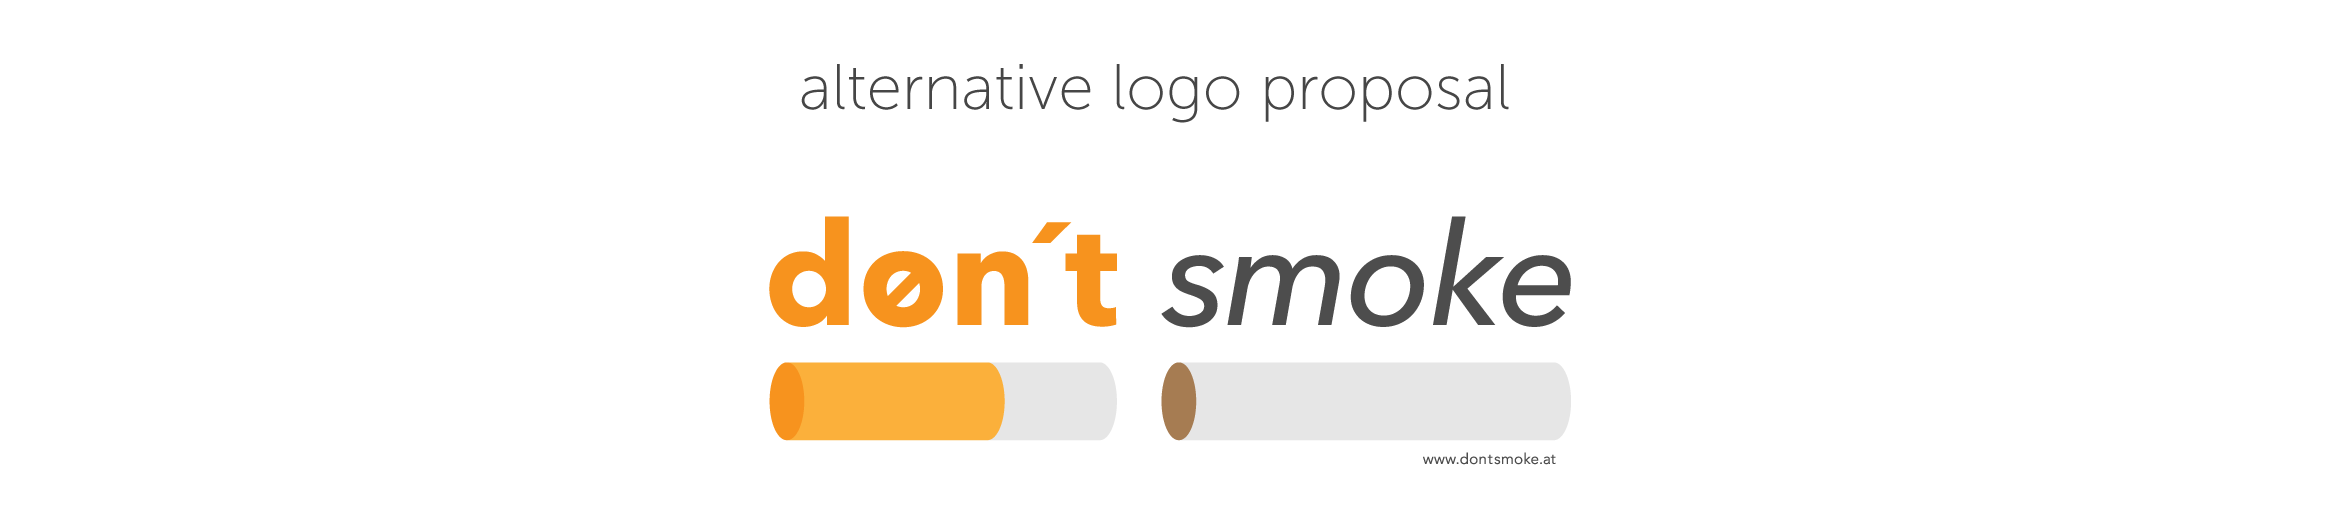 dontsmoke-logo-alternative